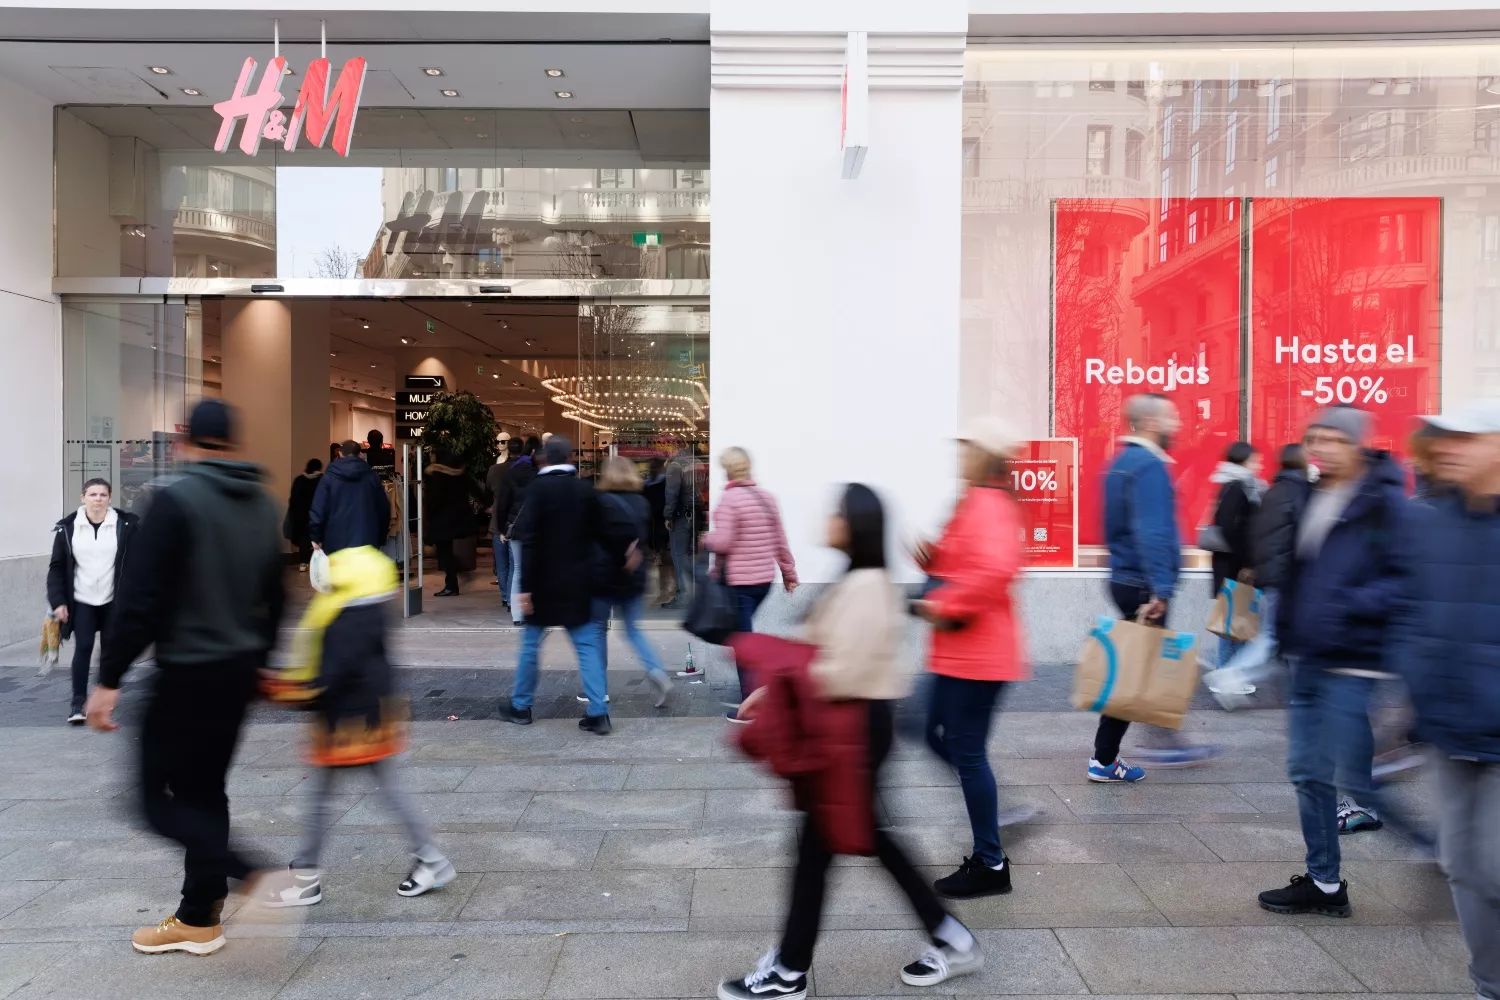 H&M baixo a persiana: fecha estas 28 lojas em Espanha